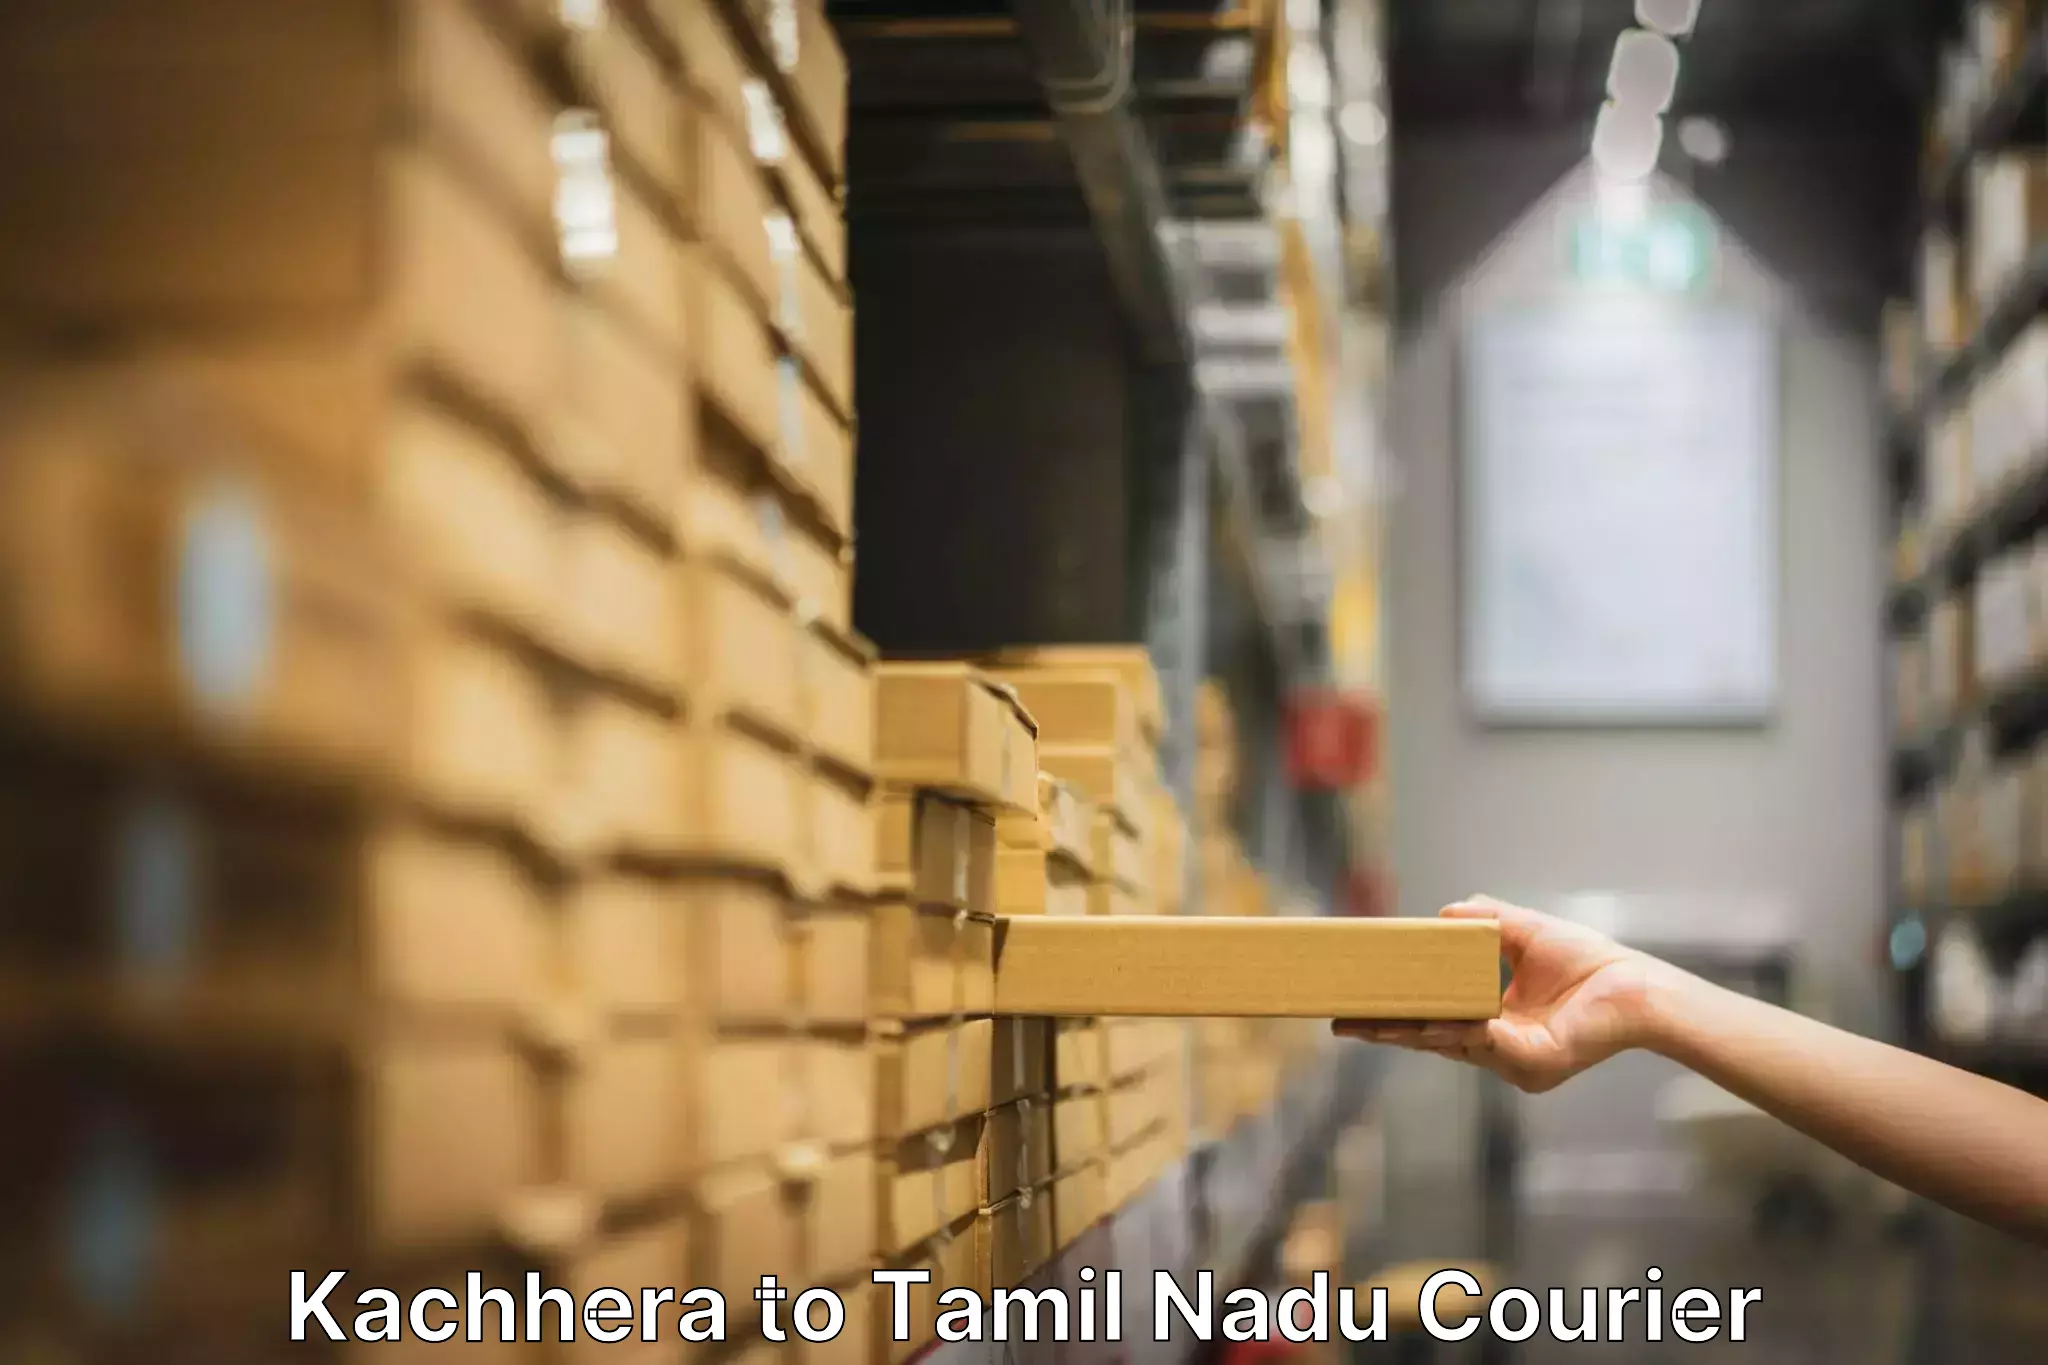 Furniture moving experts Kachhera to Orathanadu